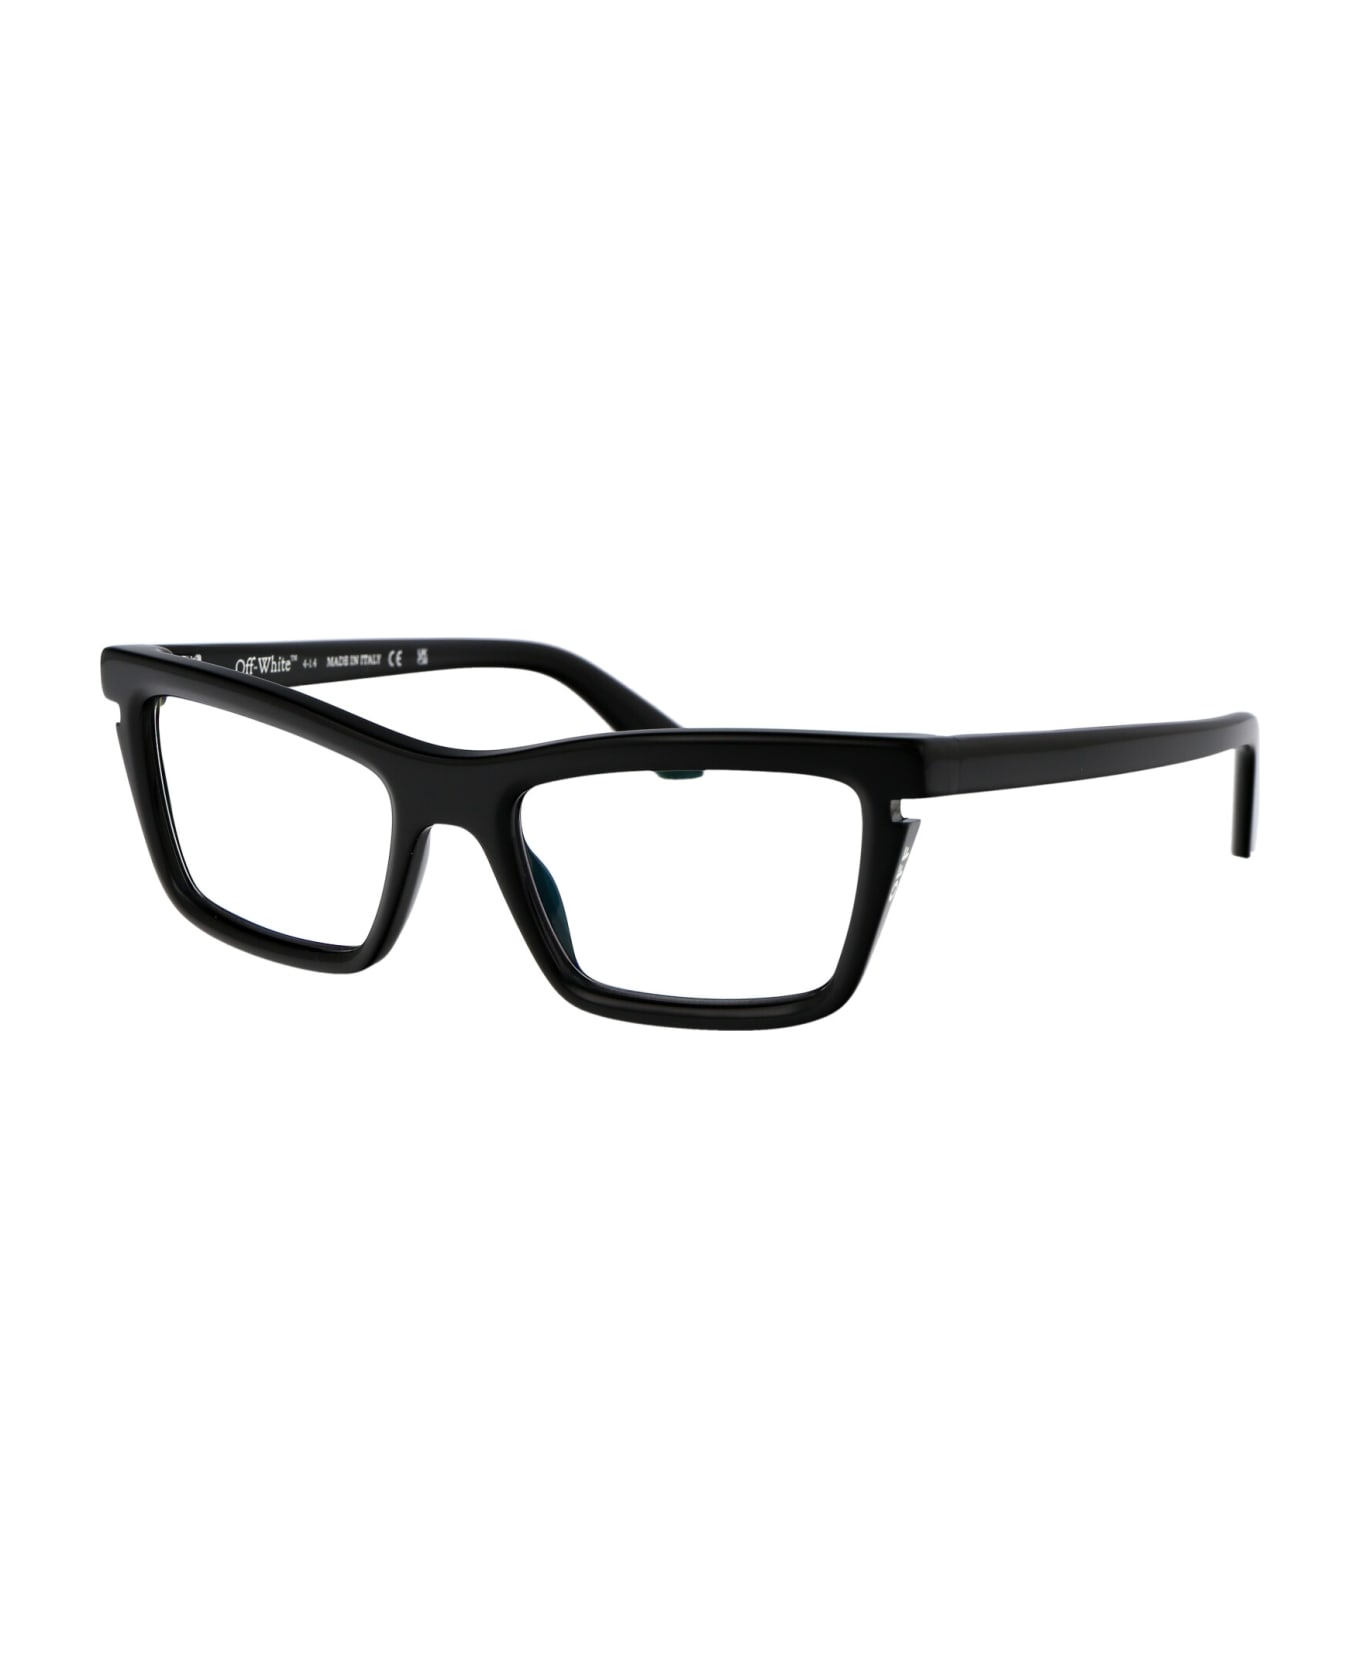 Off-White Optical Style 50 Glasses - 1000 BLACK アイウェア